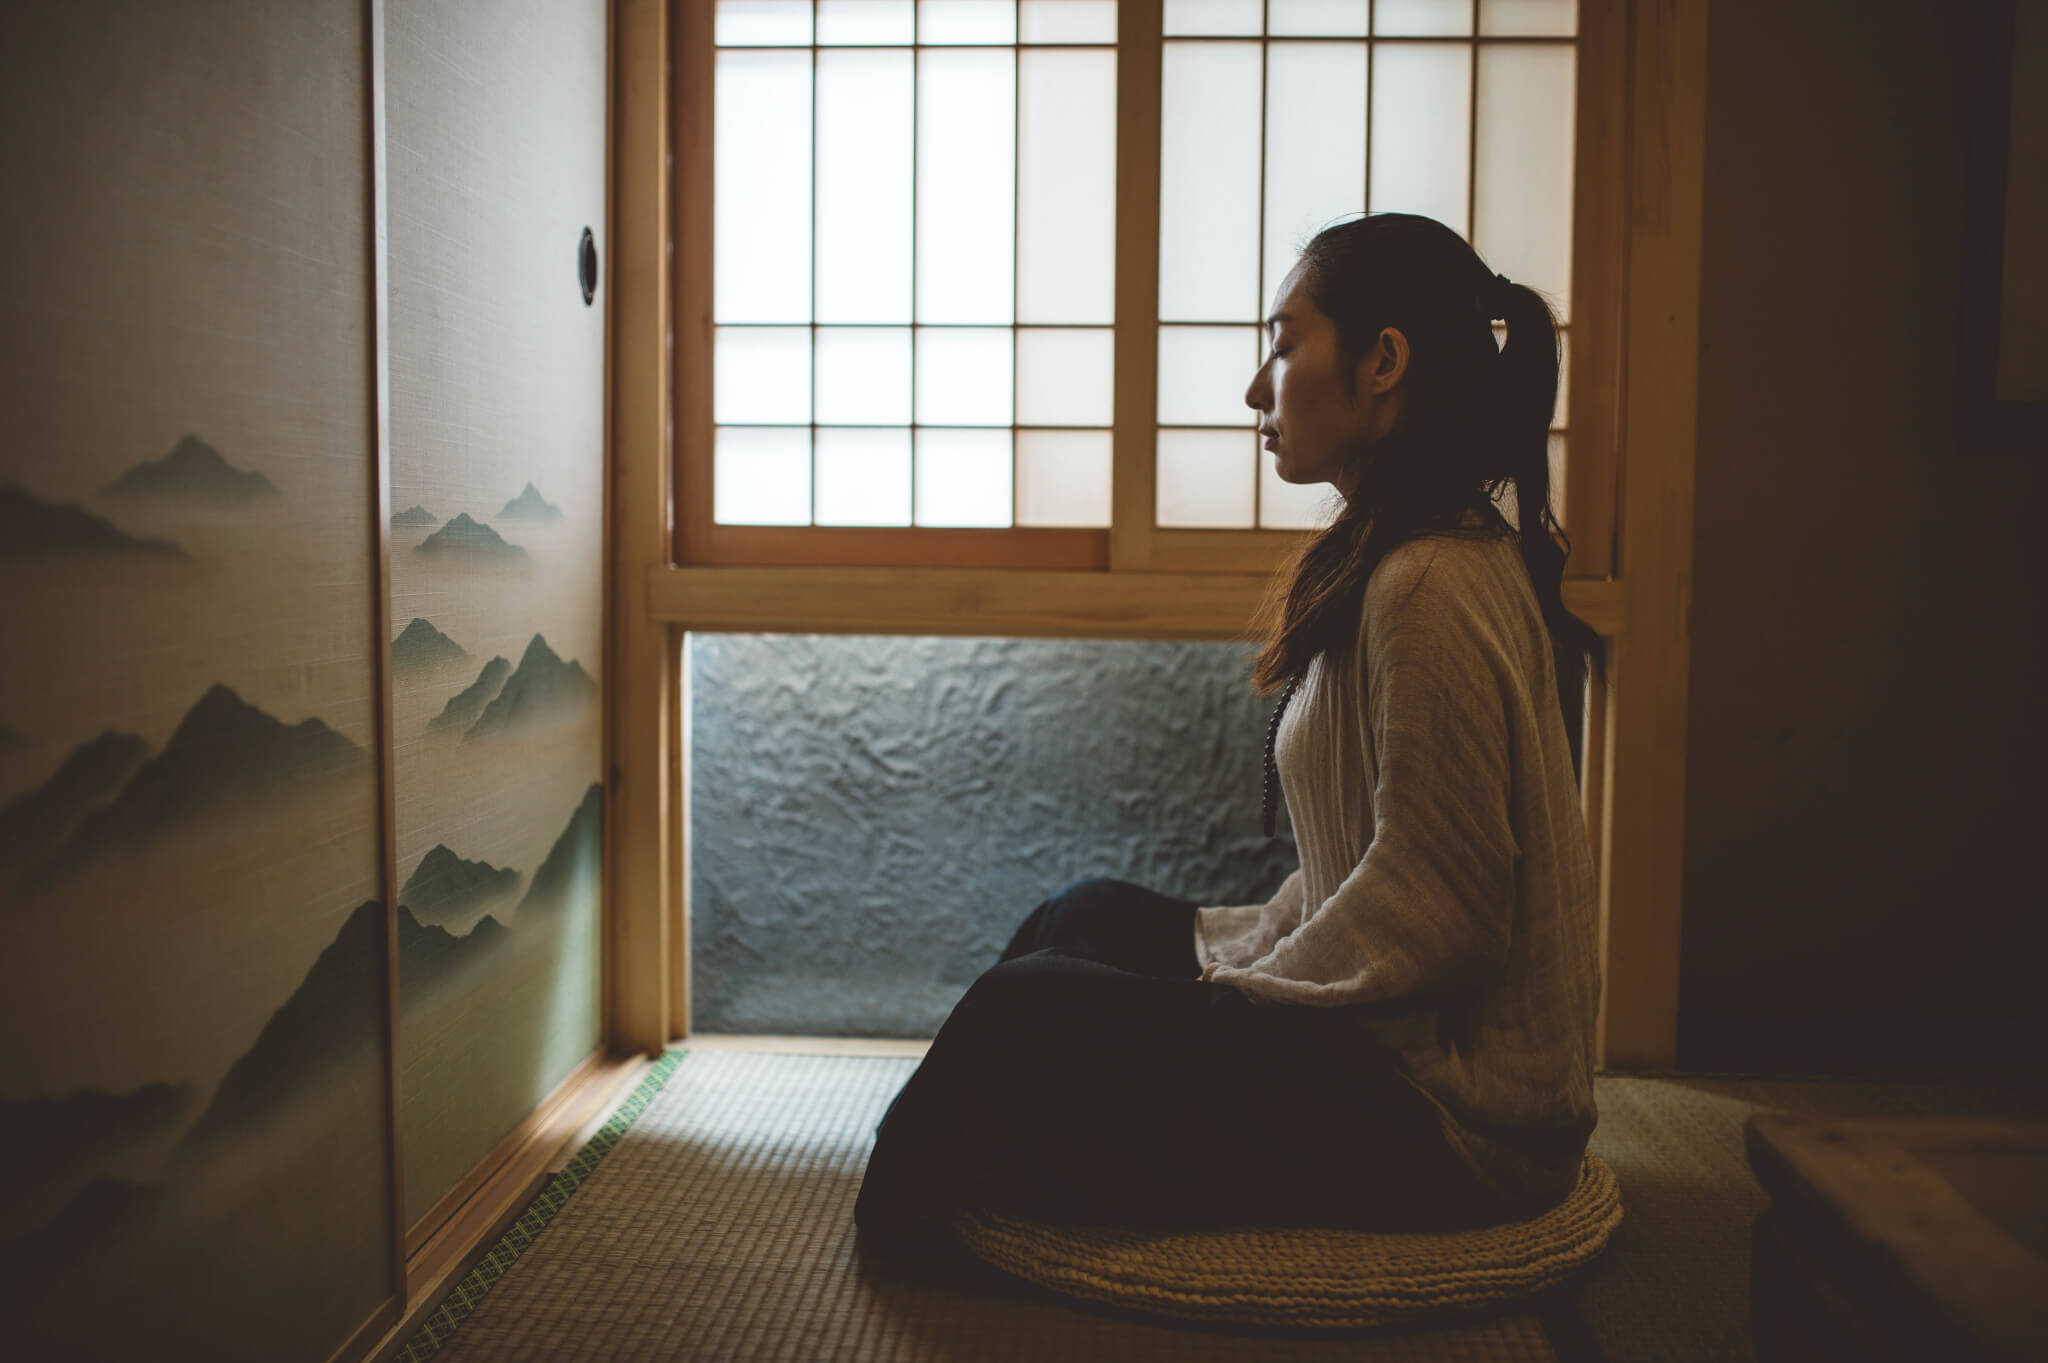 Young woman meditating